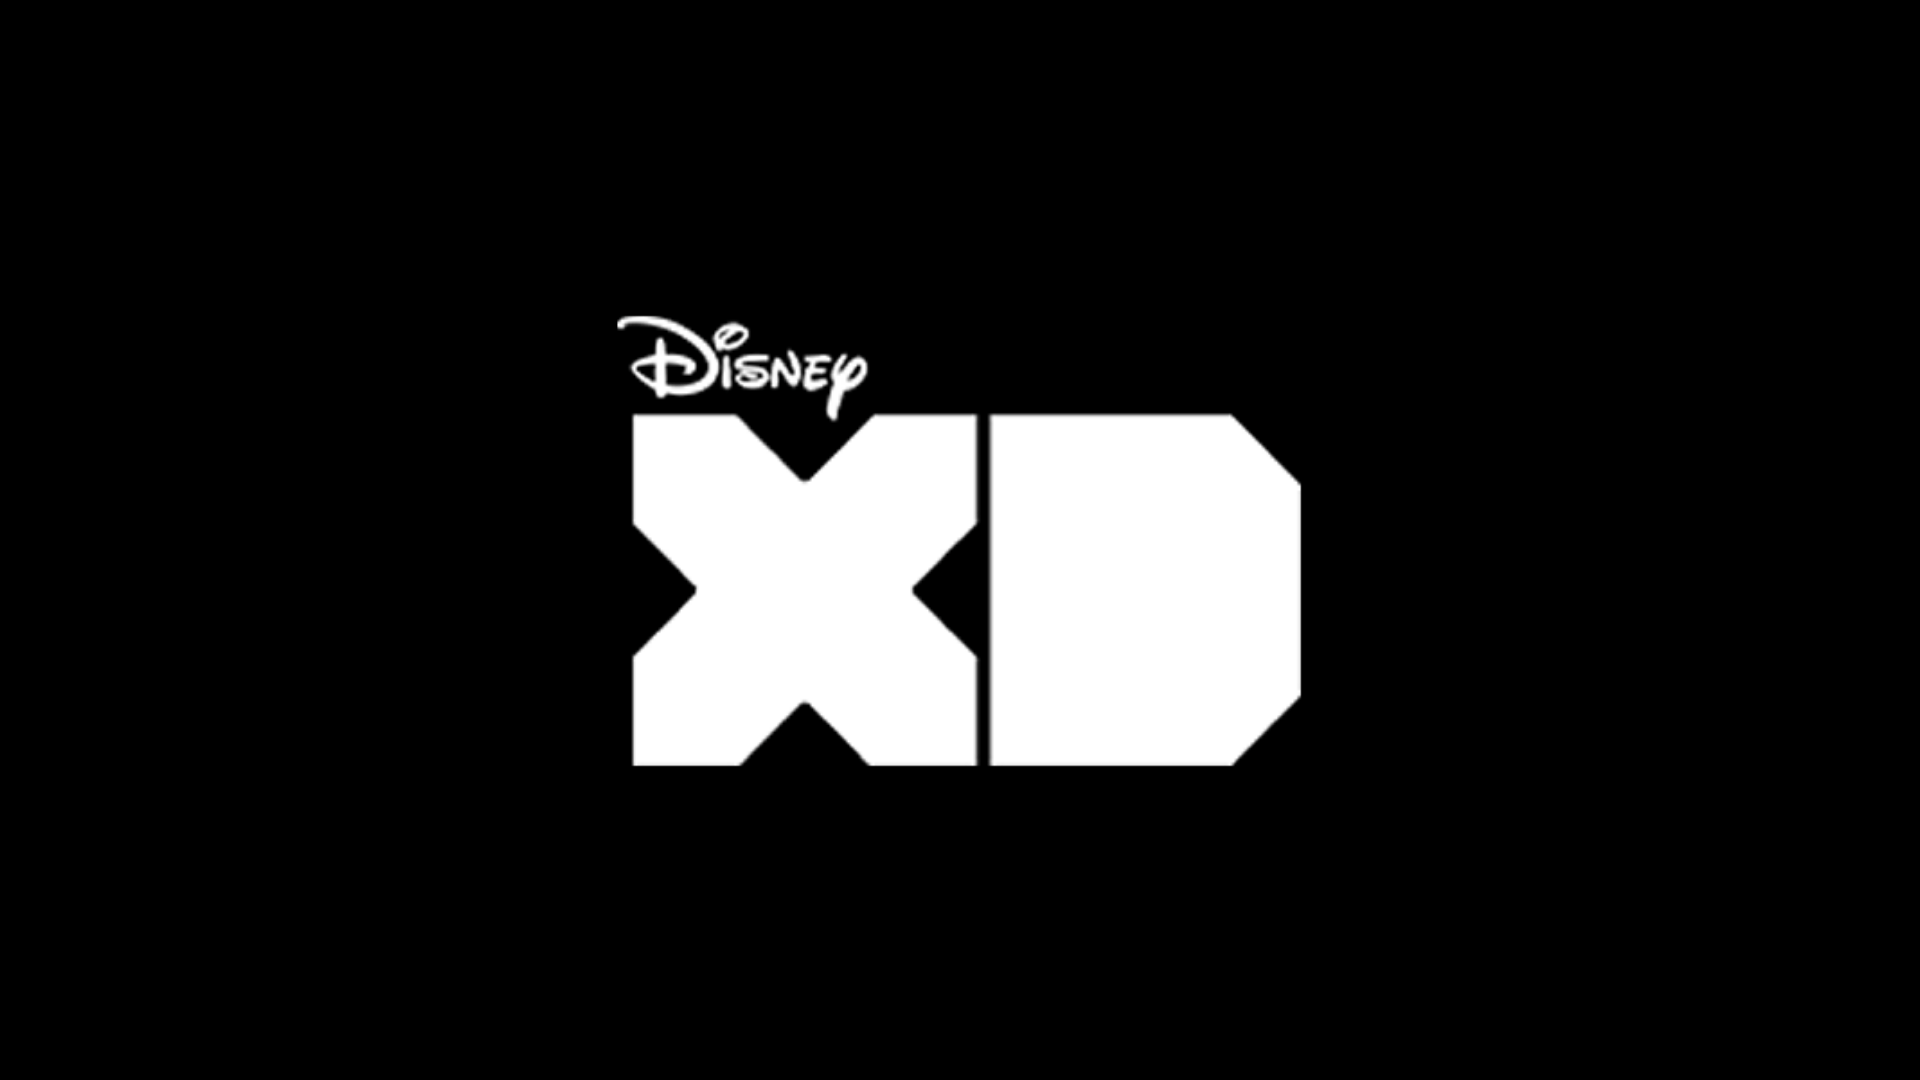 Disney XD ao vivo,Disney XD online,assistir Disney XD,assistir Disney XD ao vivo,assistir Disney XD online,Disney XD gratis,assistir Disney XD gratis,ao vivo online,ao vivo gratis,ver Disney XD,ver Disney XD ao vivo,ver Disney XD online,24 horas,24h,multicanais,piratetv,piratatvs.com